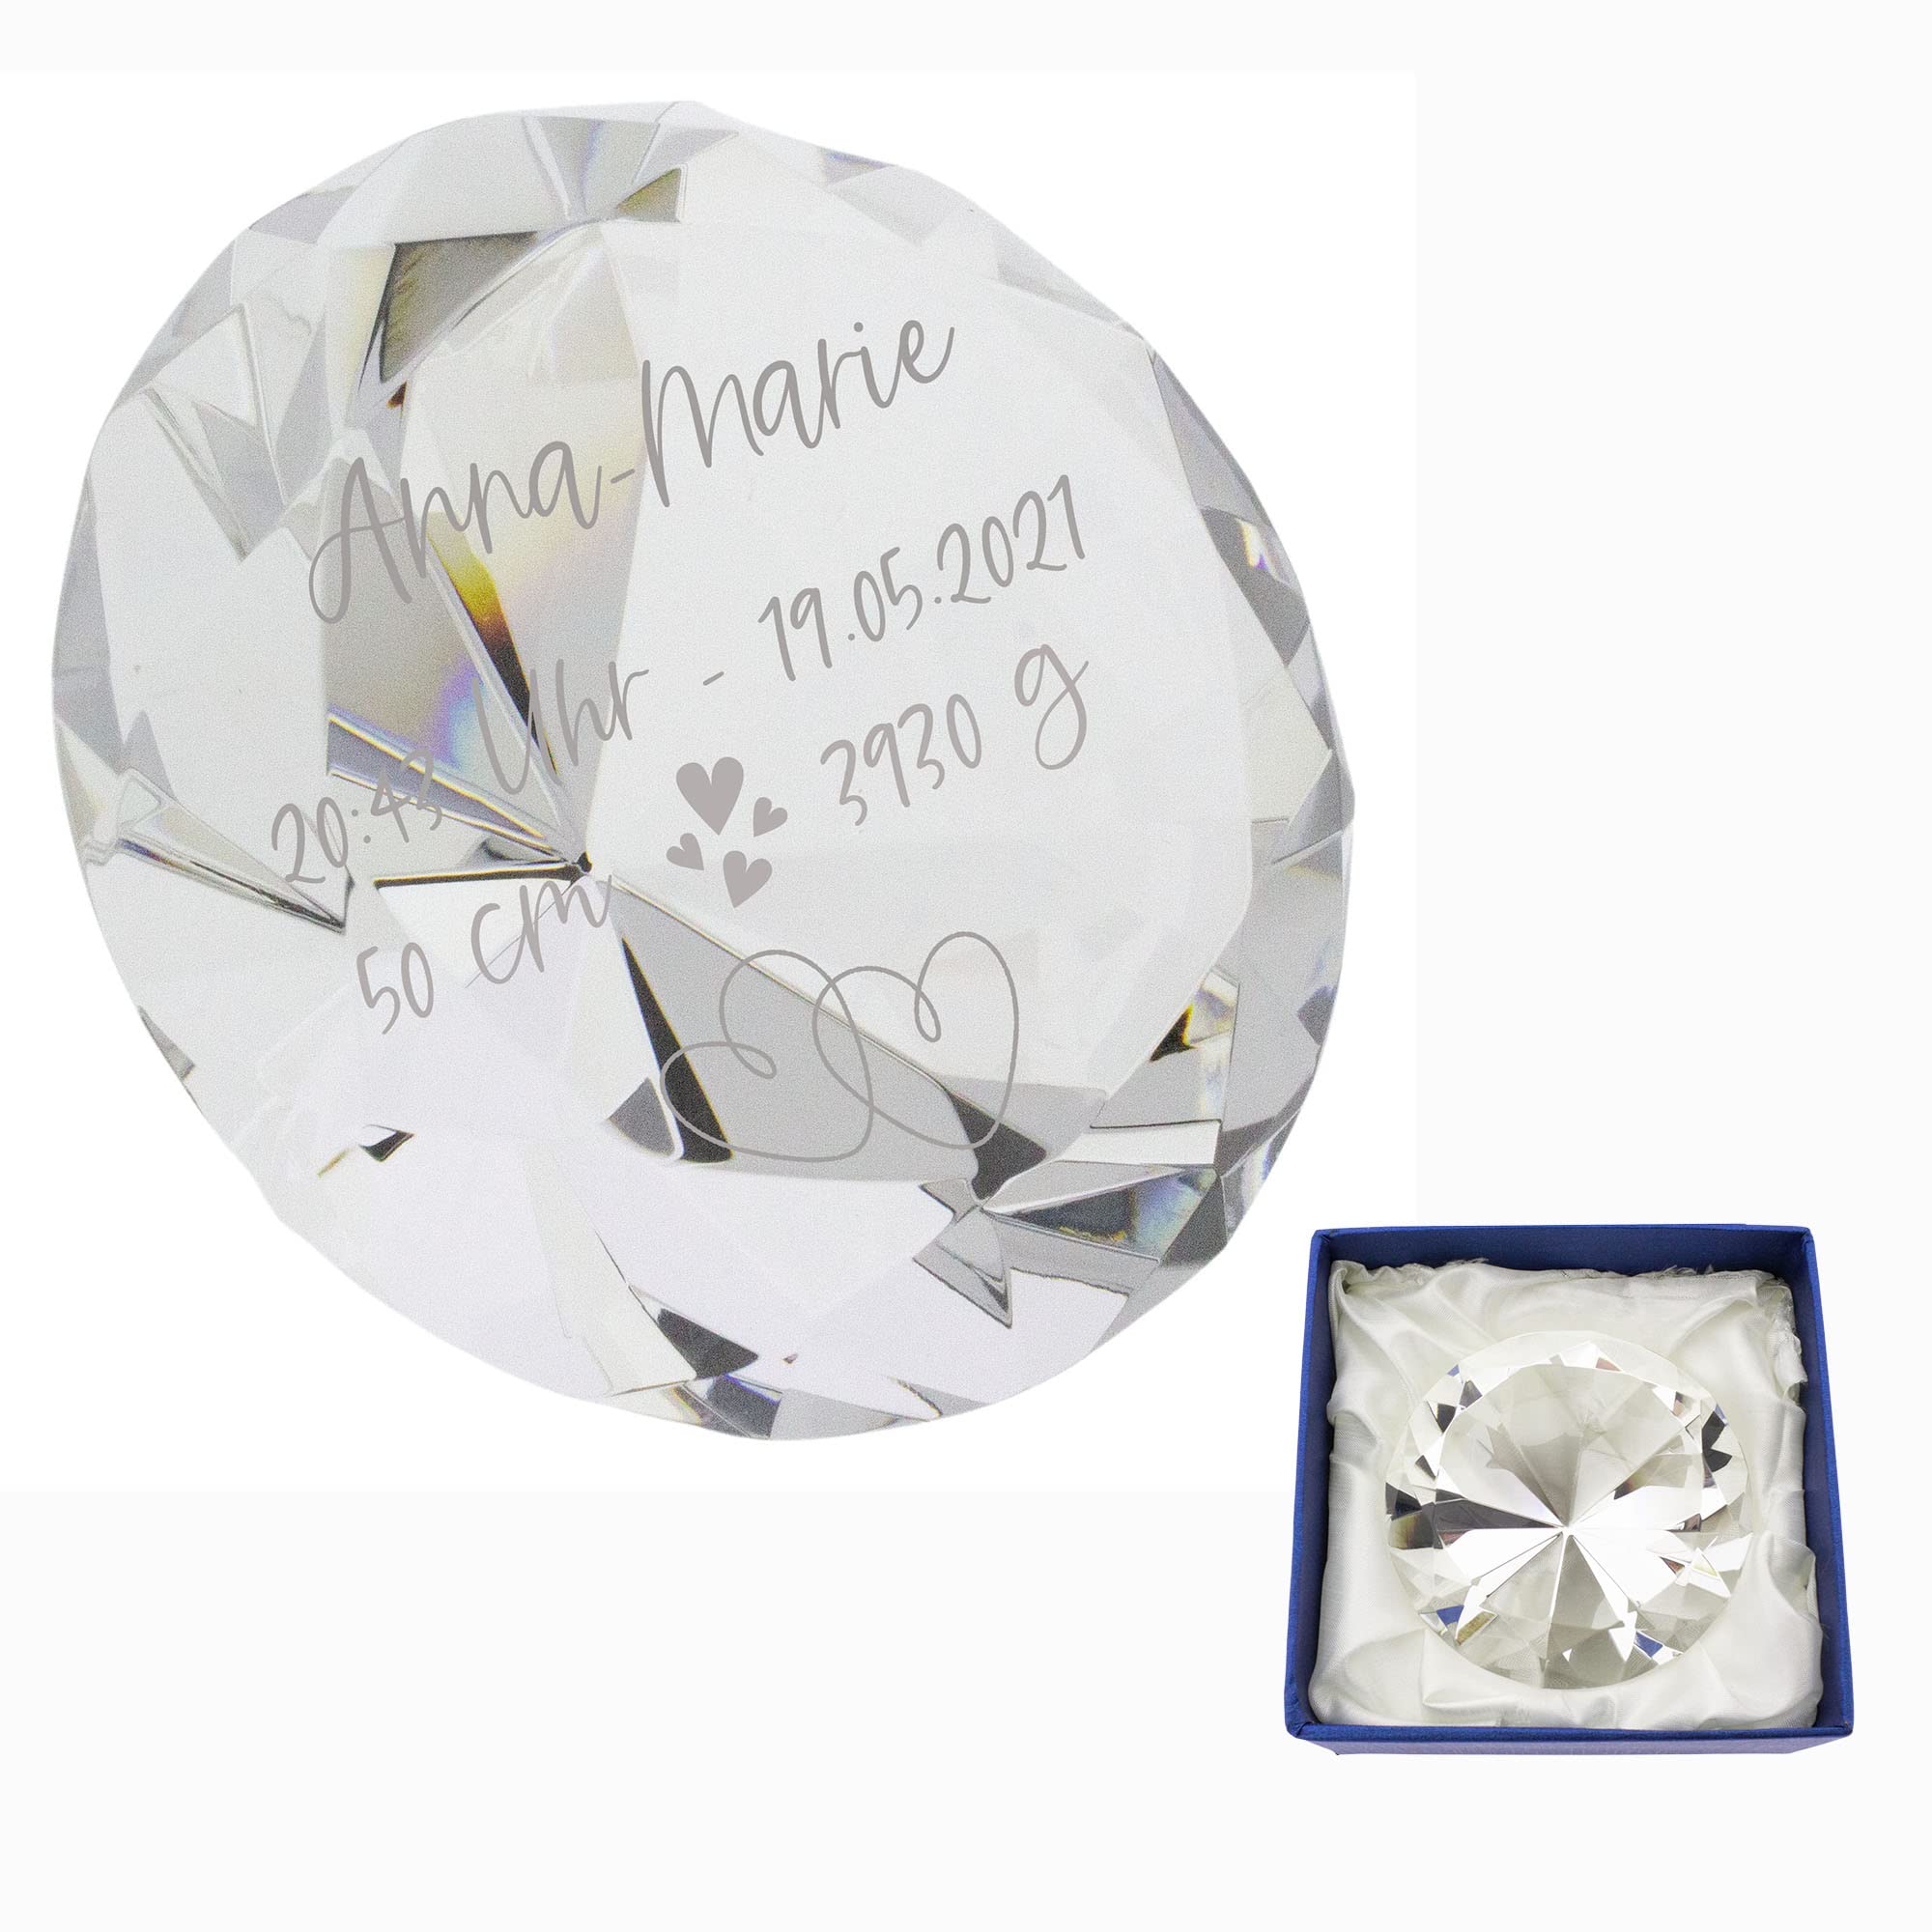 Kristall-Diamant aus Glas mit Gravur zur Geburt Ø 80 mm in Geschenkbox - Geschenk zur Geburt (Modell 2, Klar)